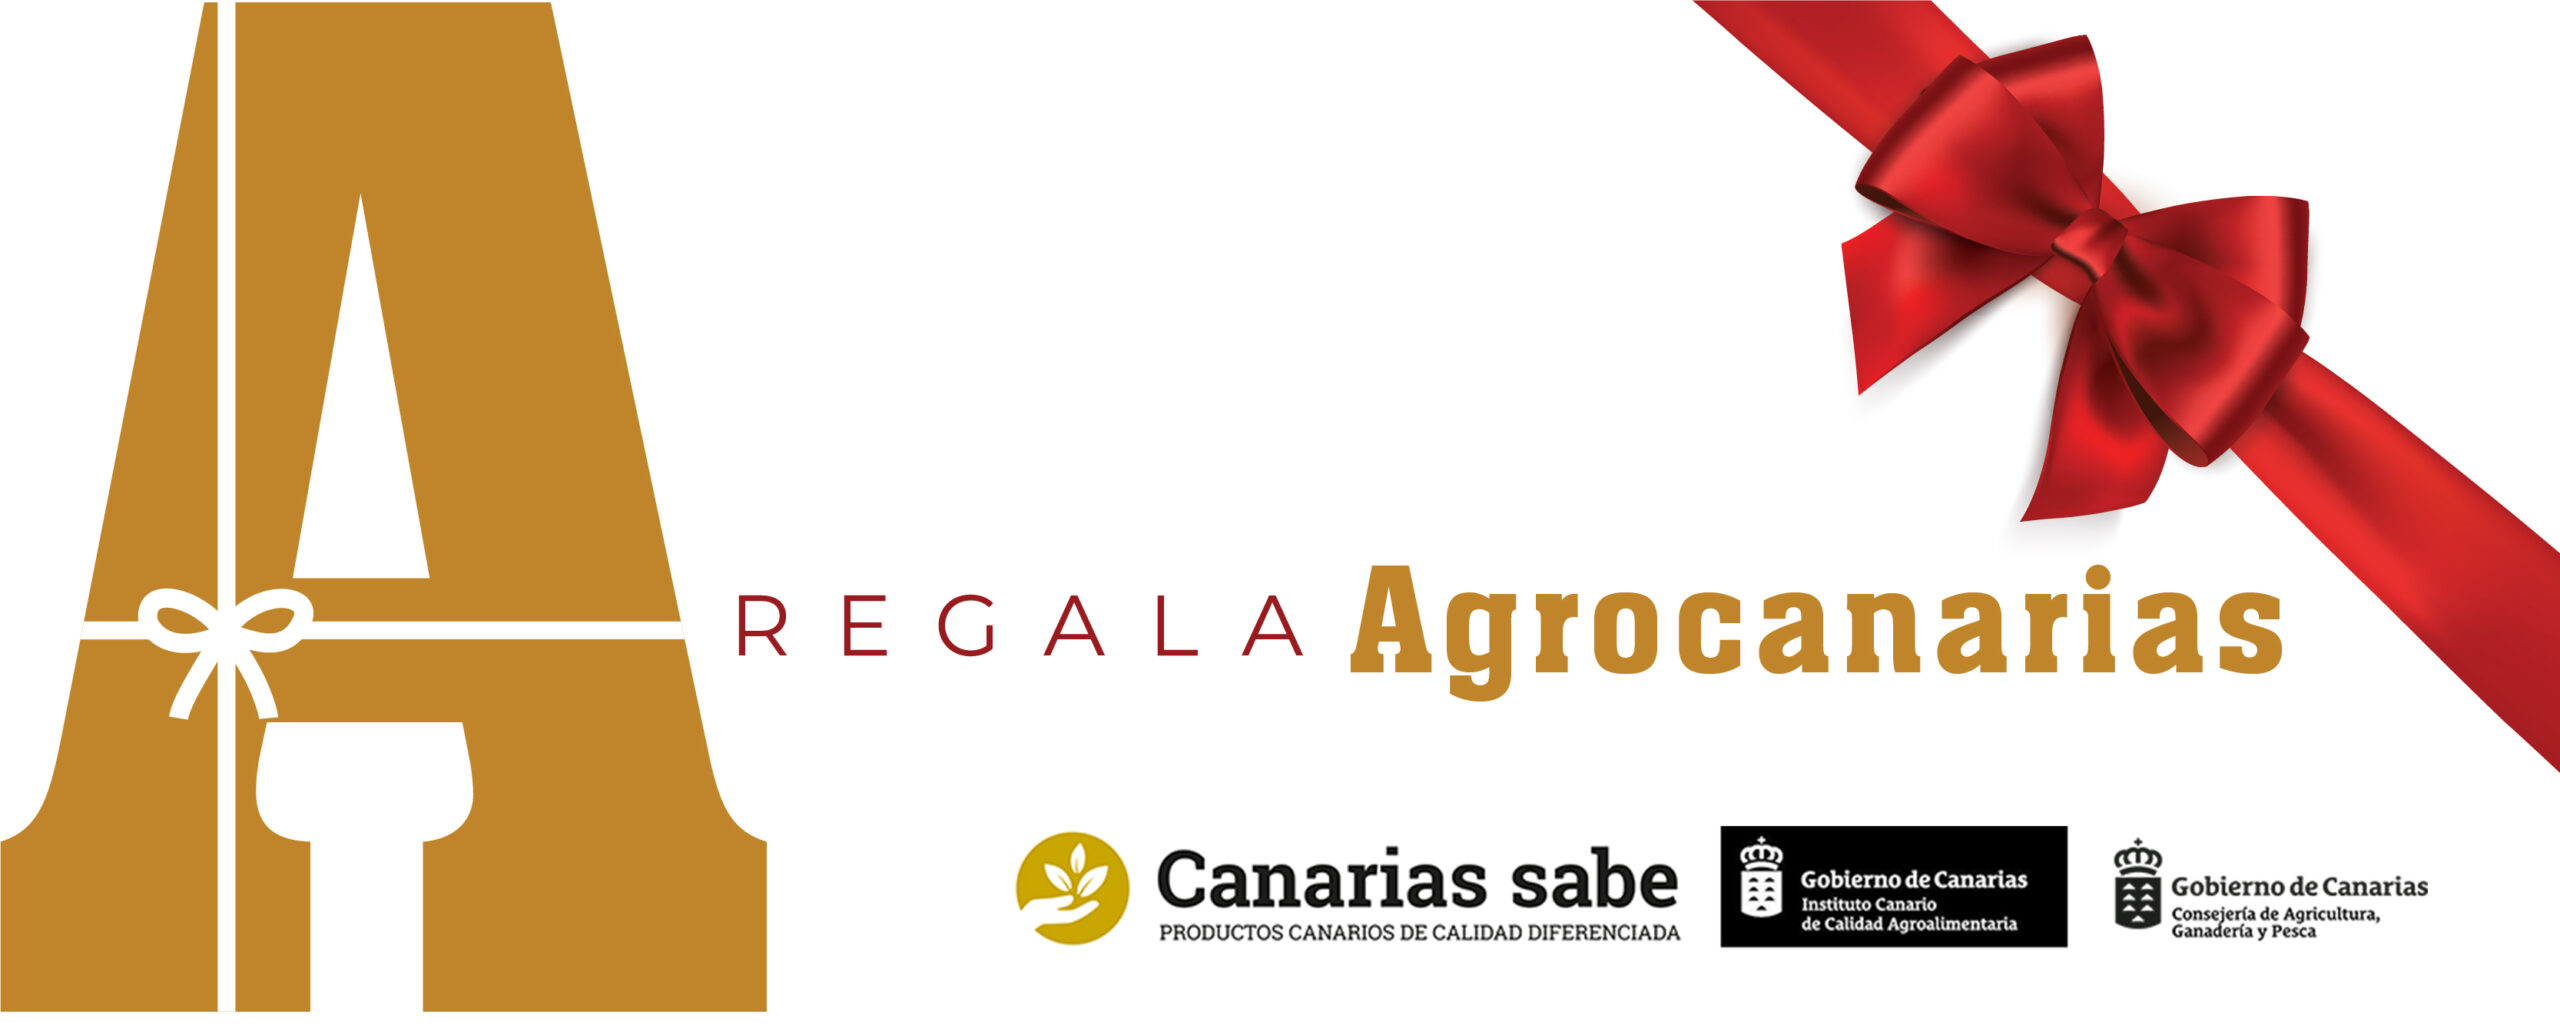 El ICCA reactiva su plataforma para promover la comercialización de los productos premiados en Agrocanarias